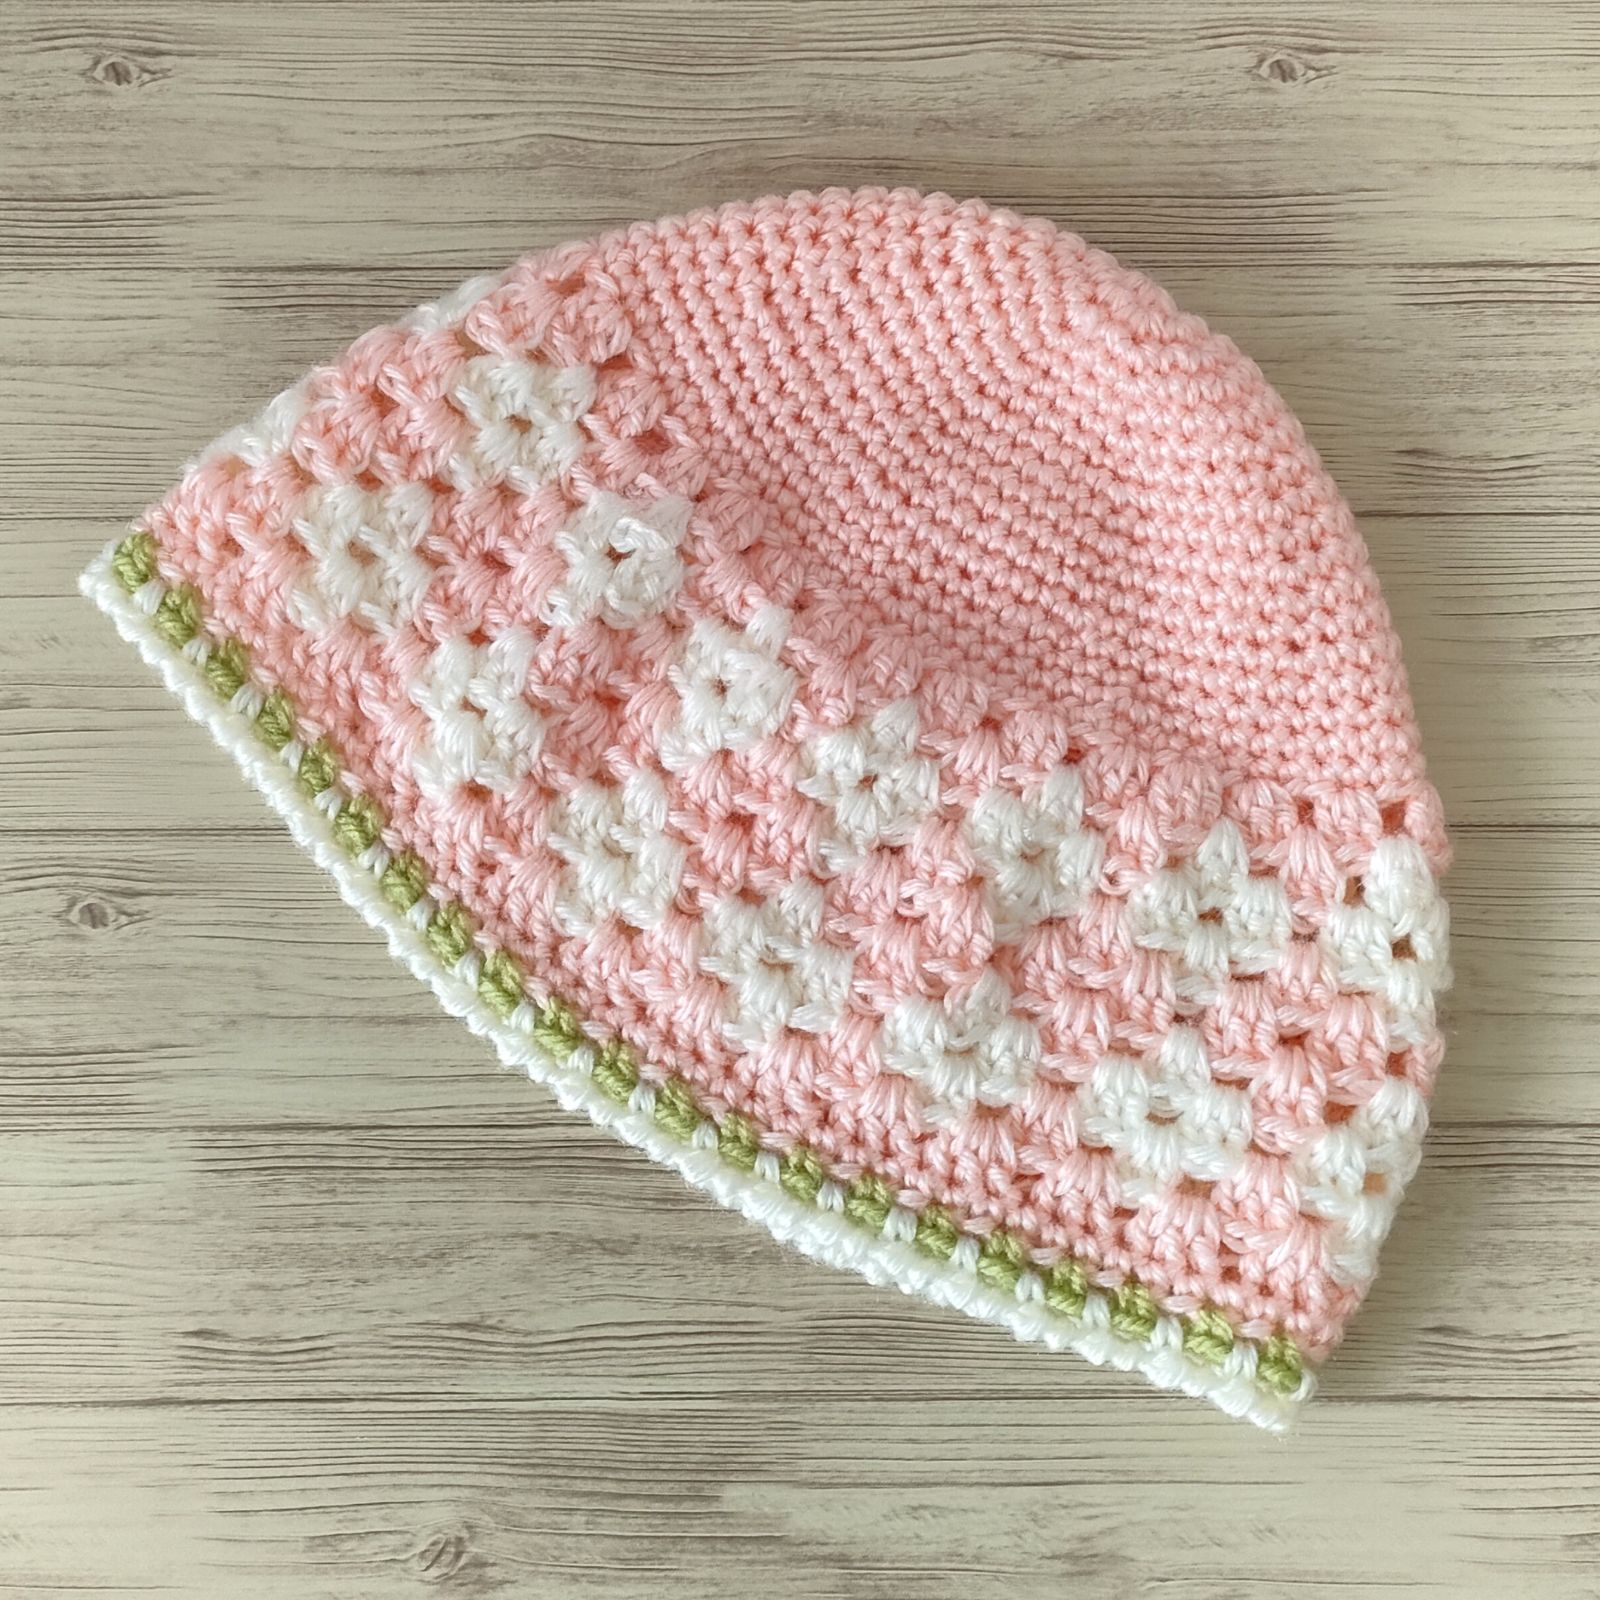 ビーニー 手編み クロシェハット ニット帽 毛糸 帽子 かぎ針編み ピンク 桜 メルカリShops